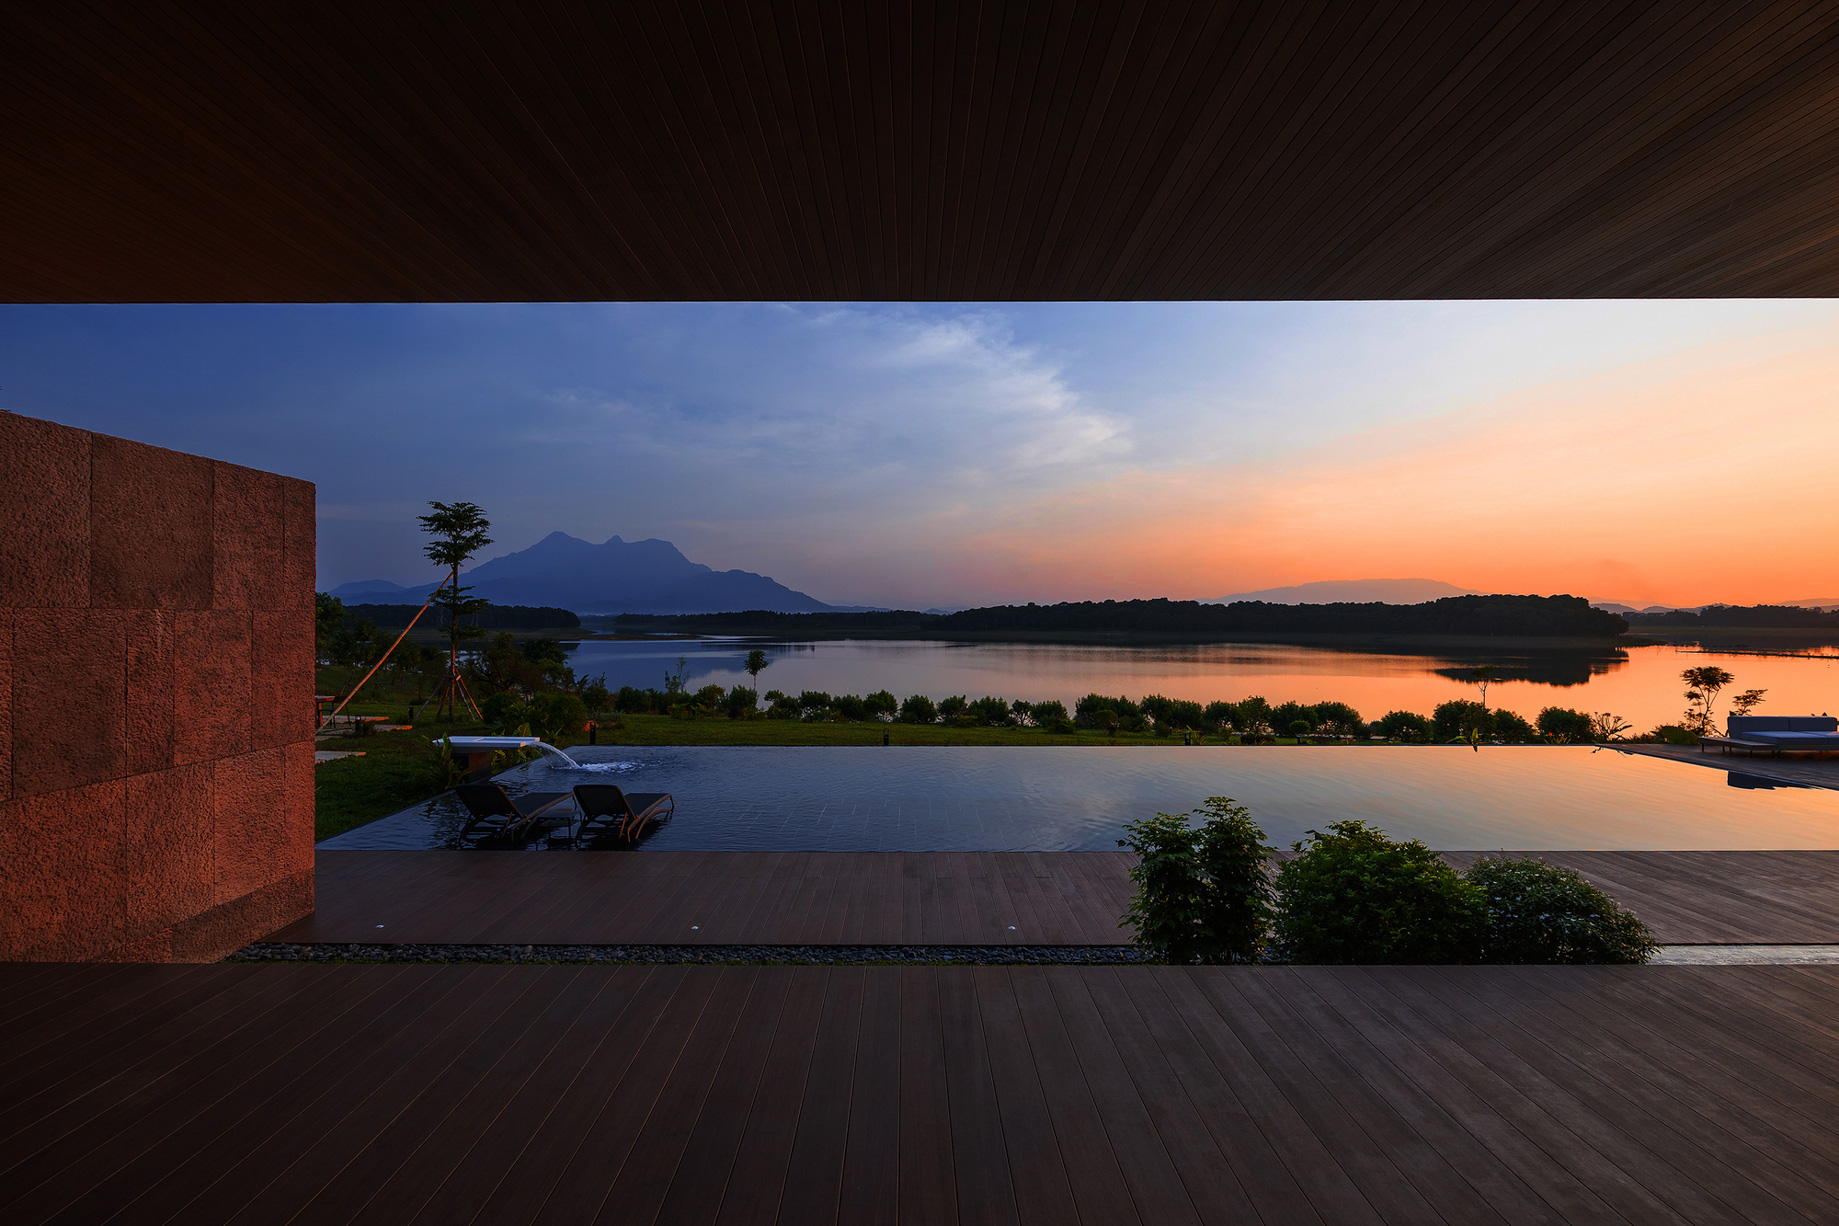 SuoiHai Lake Tan Vien Mountain View Villa – Ho Suoi Hai, Ba Vi, Hanoi, Vietnam